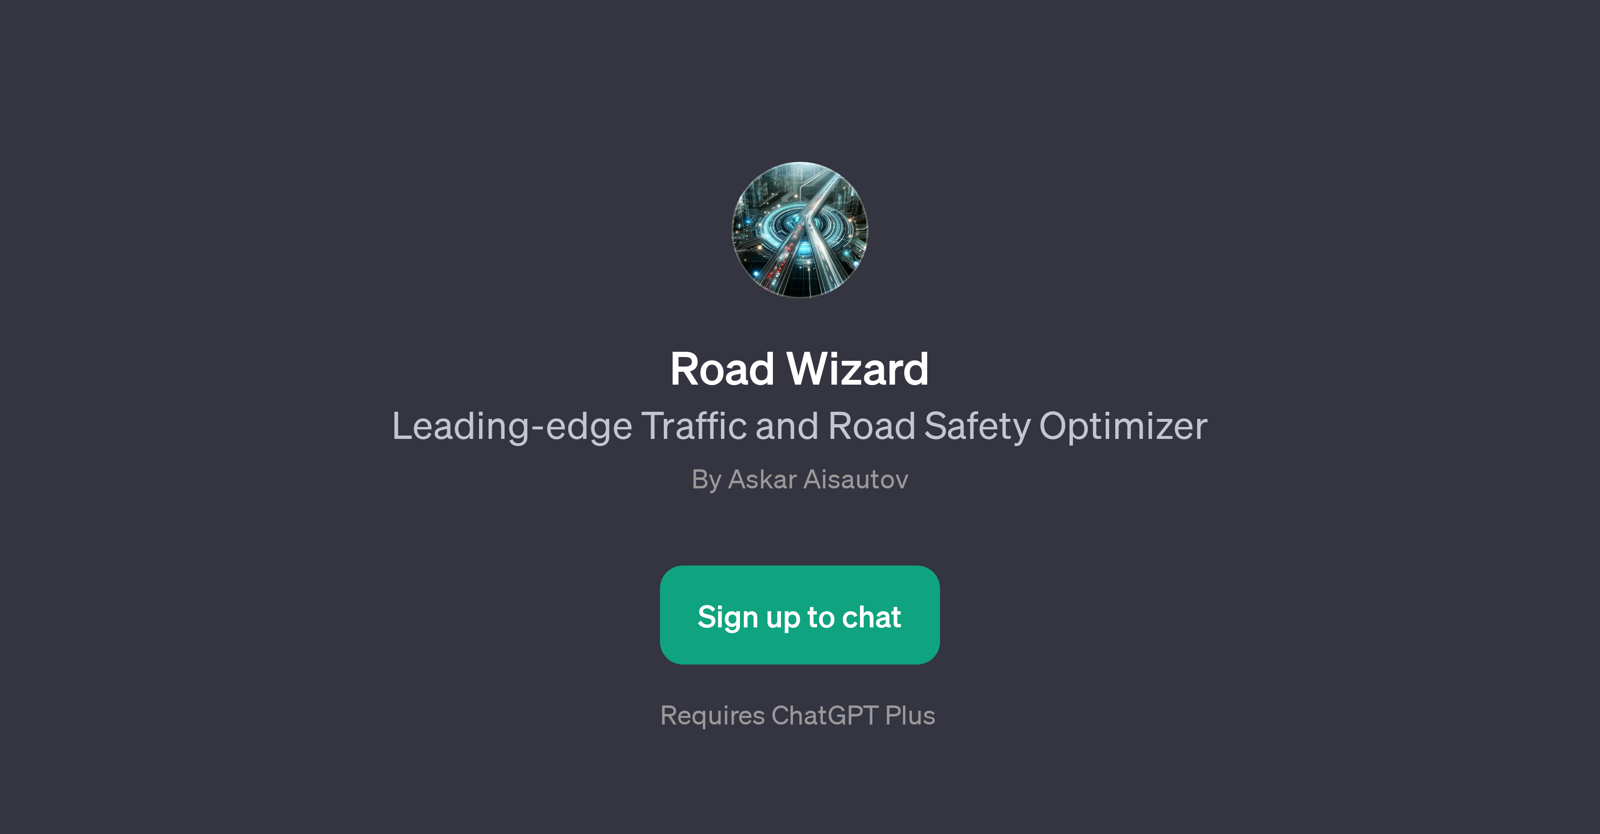 Road Wizard website